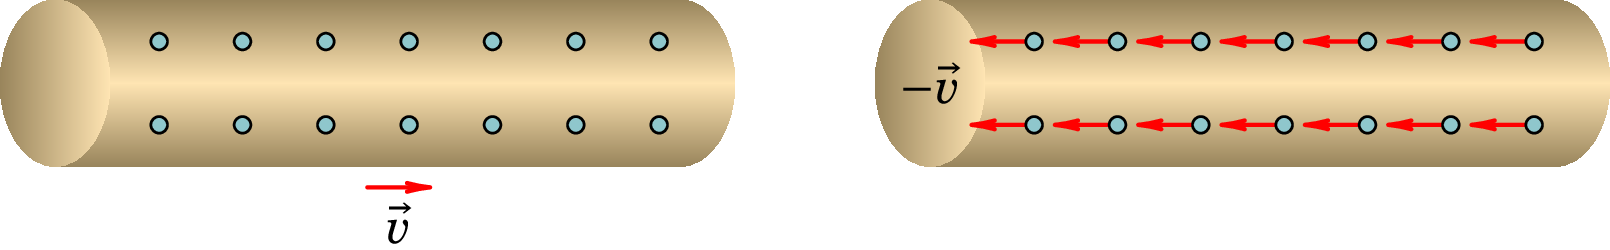 Movimento da nuvem de eletrões de condução relativamente
aos iões fixos (esquerda) e movimento dos iões em relação à nuvem
(direita).